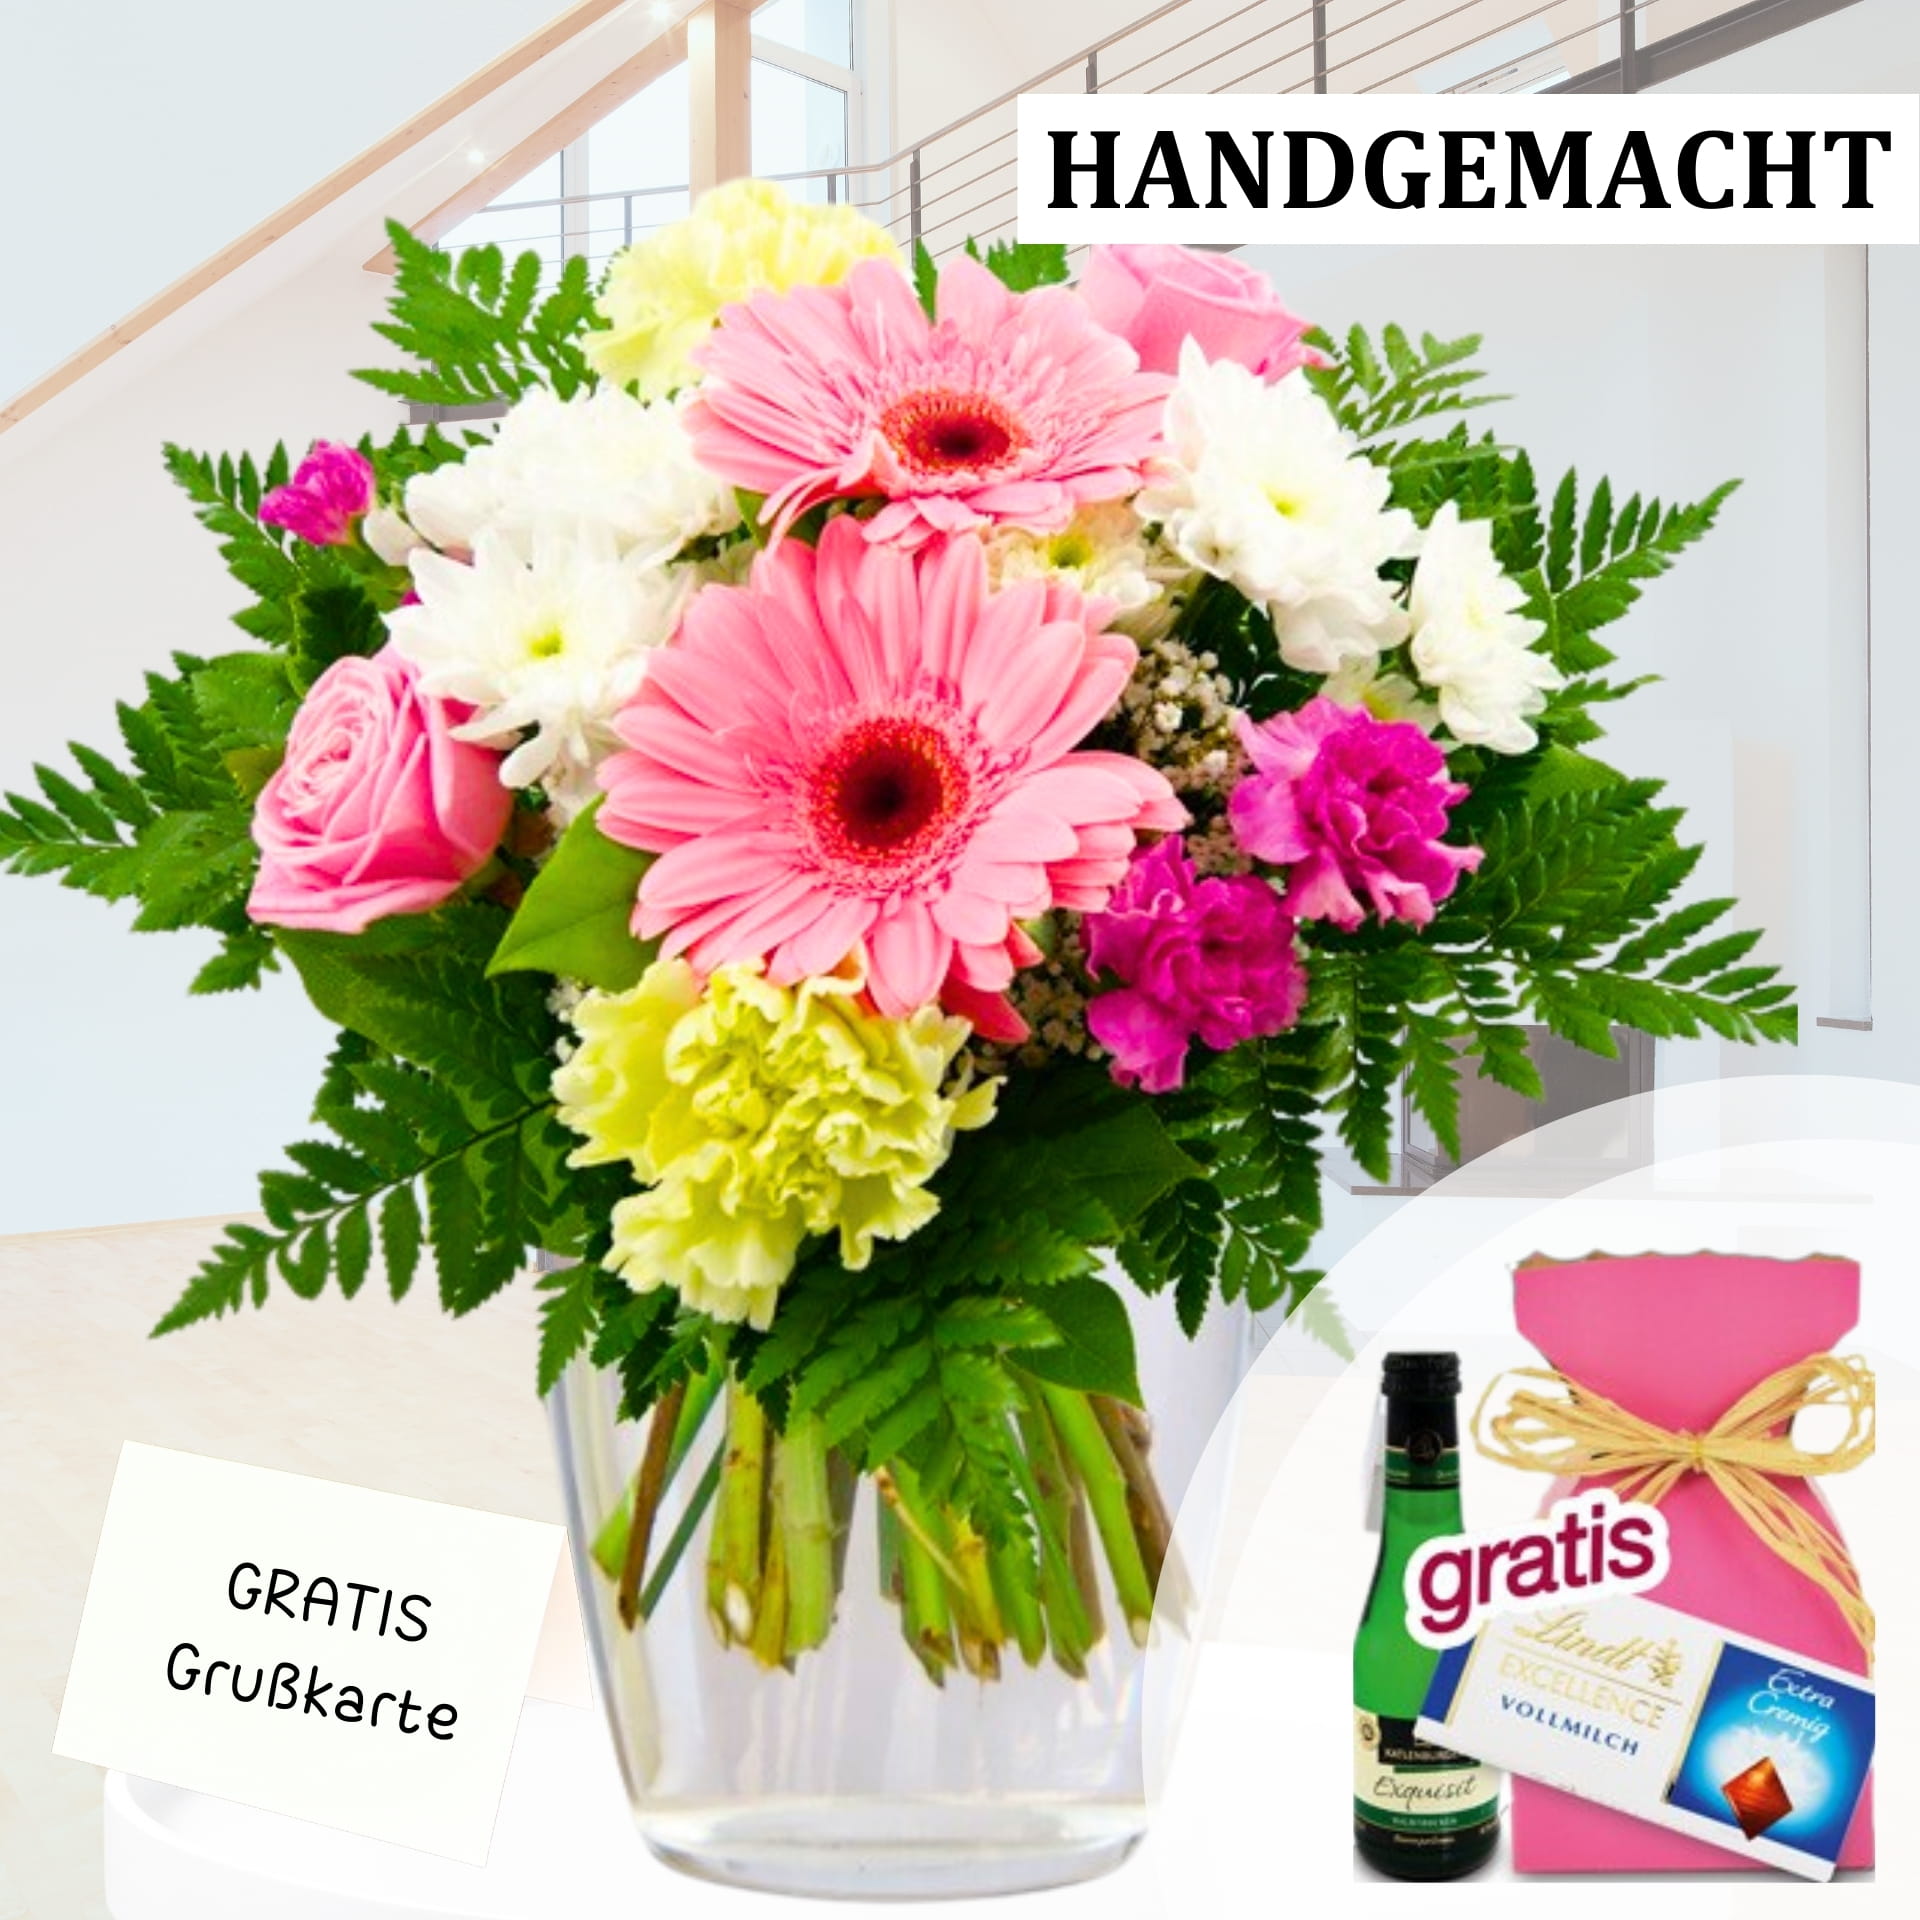 Ein handgemachter Blumenstrauß aus Gerberas und Rosen, der per Post versendet wird. Gratis Grußkarte inklusive. Jetzt bestellen und Freude verschenken!